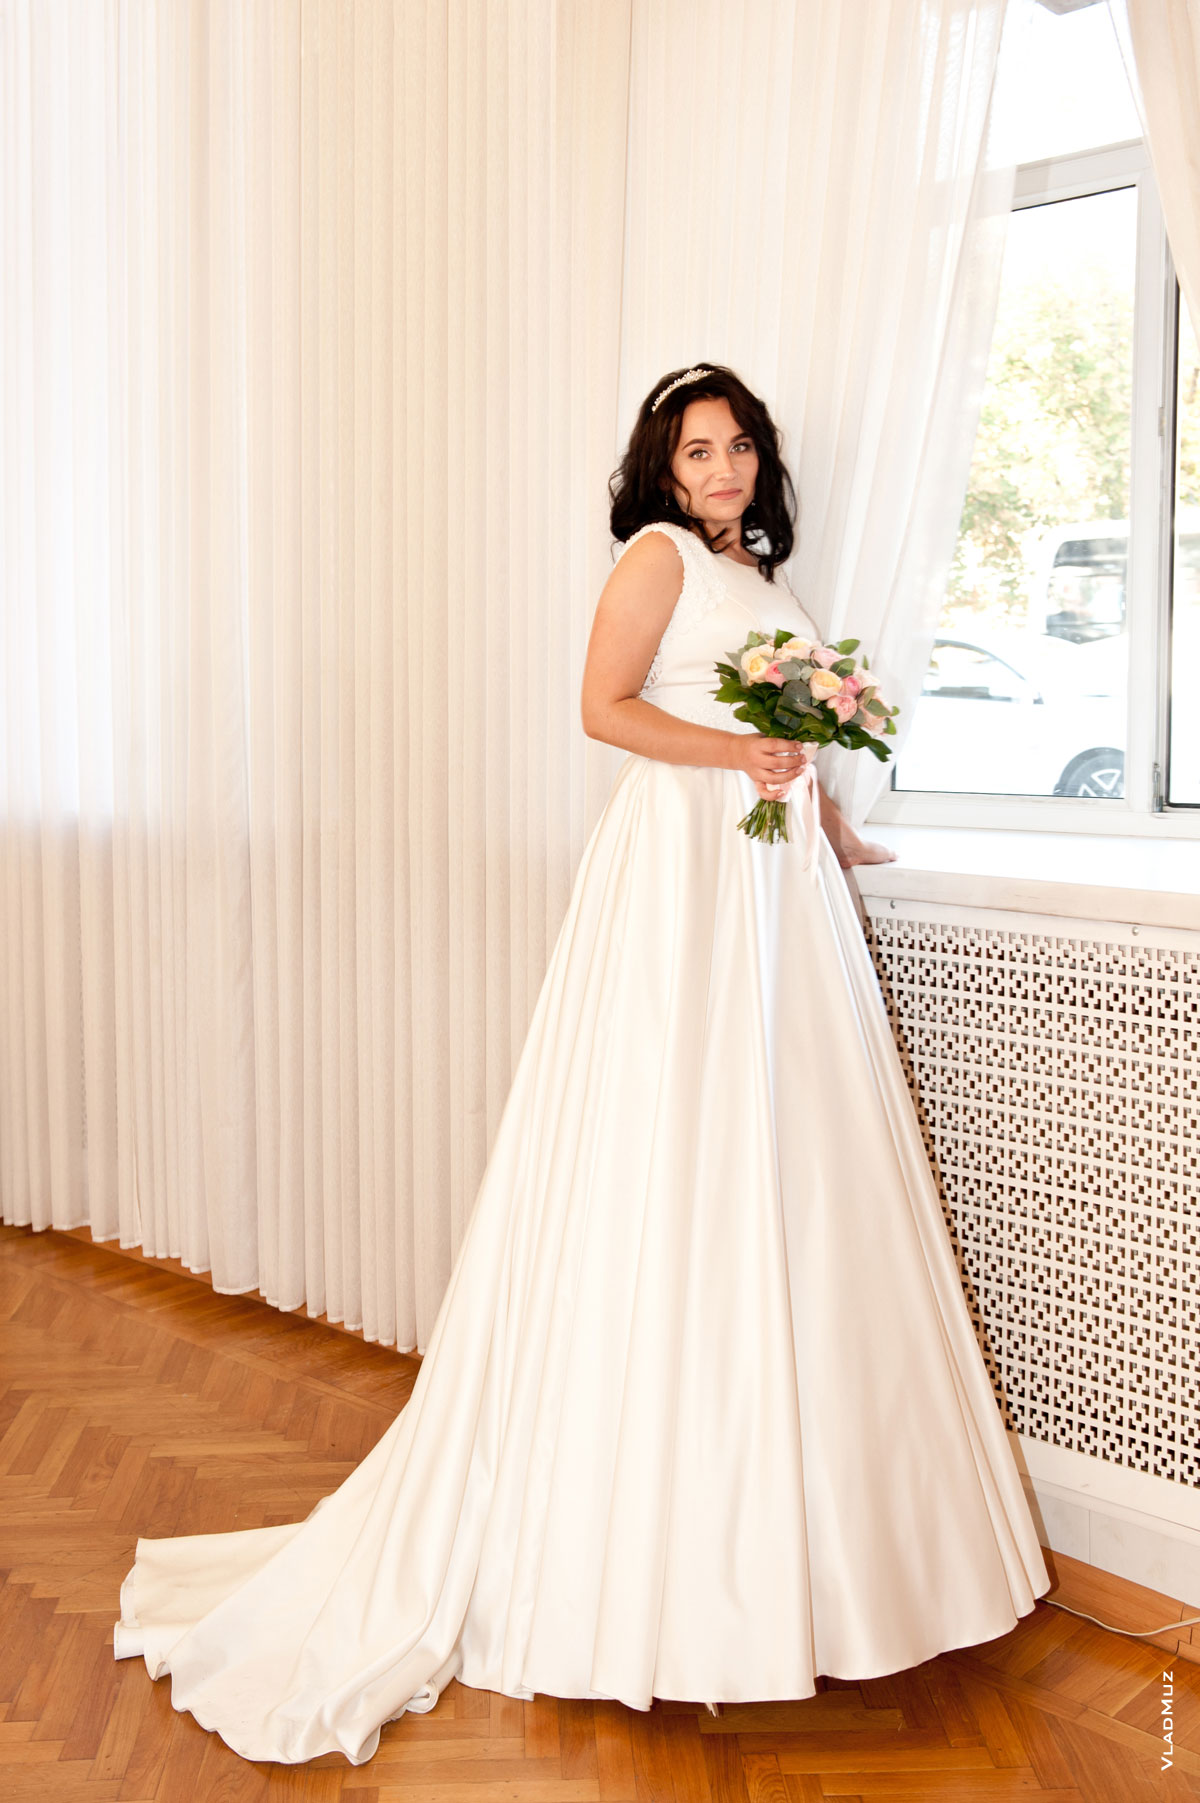 Фото невесты с букетом в длинном свадебном платье в полный рост, стоя у окна